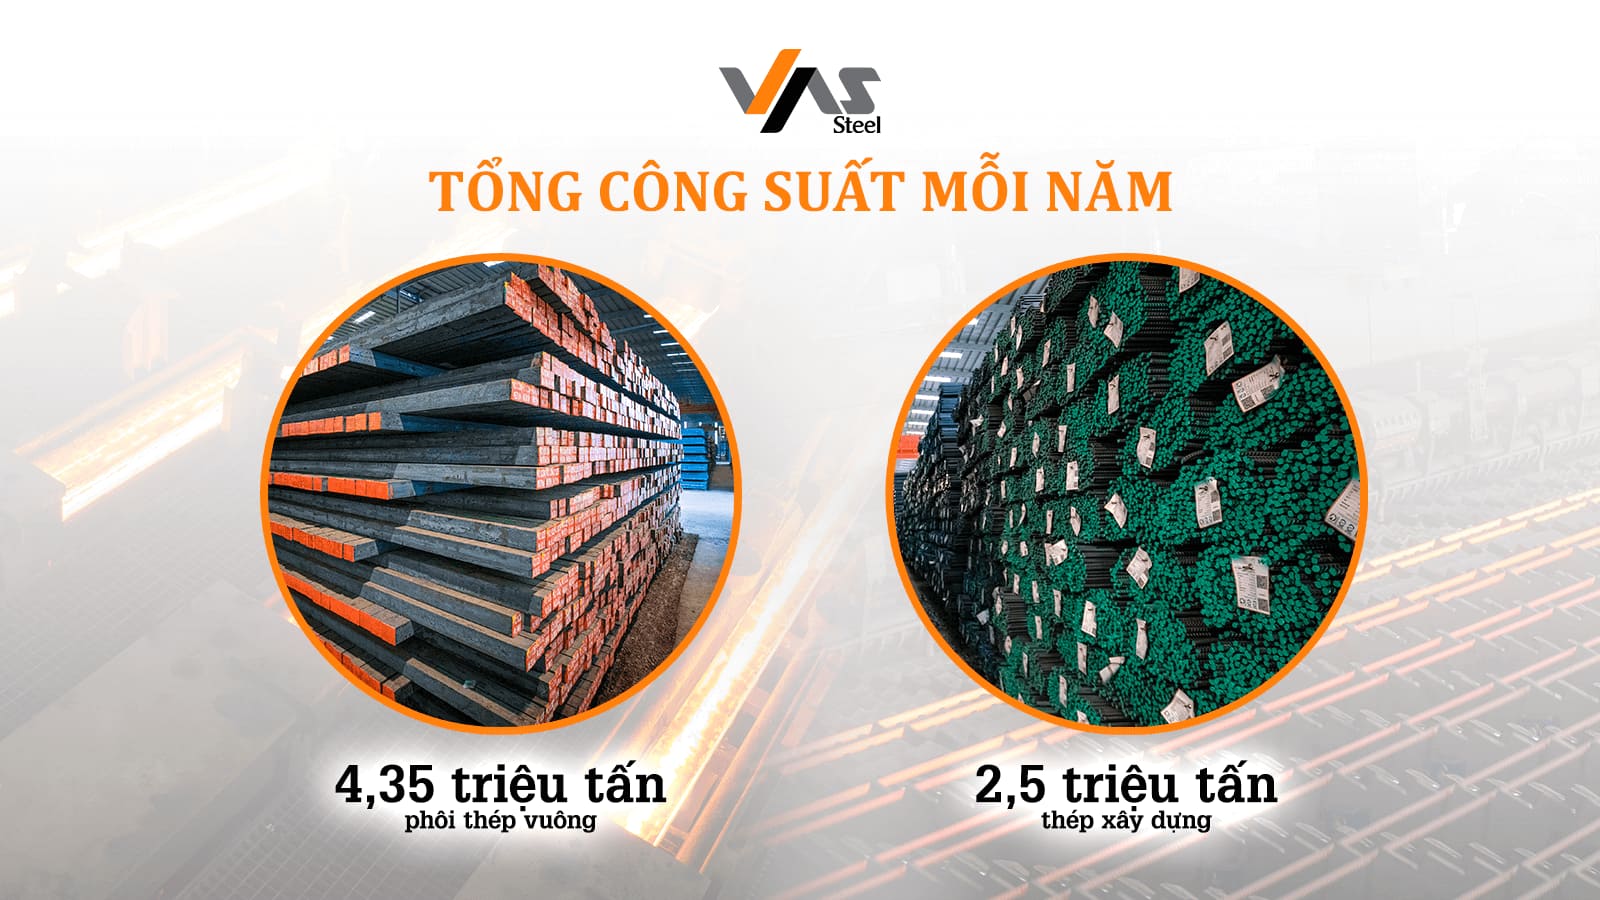 Bí quyết thành công trong một phần tư thế kỷ của VAS Group - Tập đoàn sản xuất thép hàng đầu Việt Nam